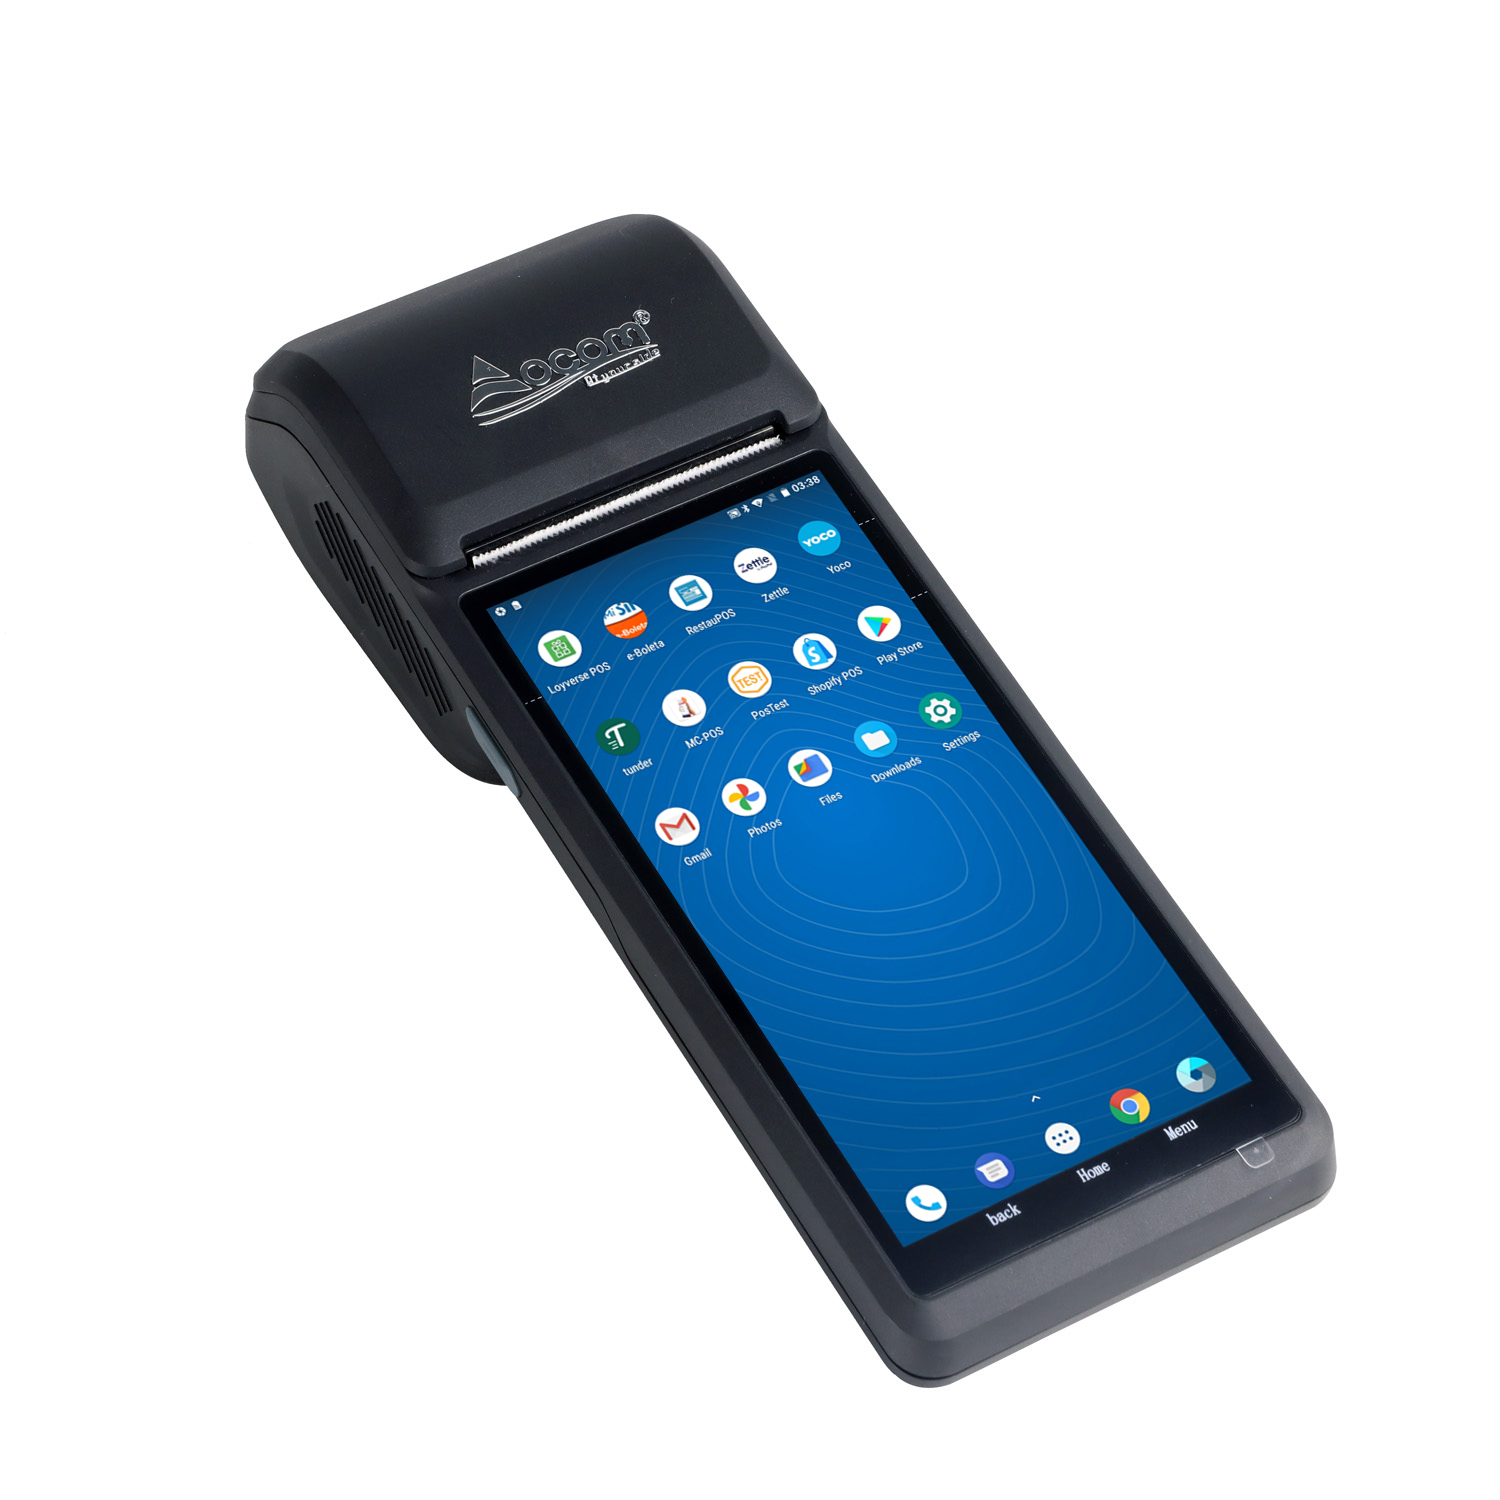 (POS-T3) дешевый сканер NFC 58 мм принтер для мобильных платежей все в одном pos-терминал android11 ​​точка продажи портативный pos-машина